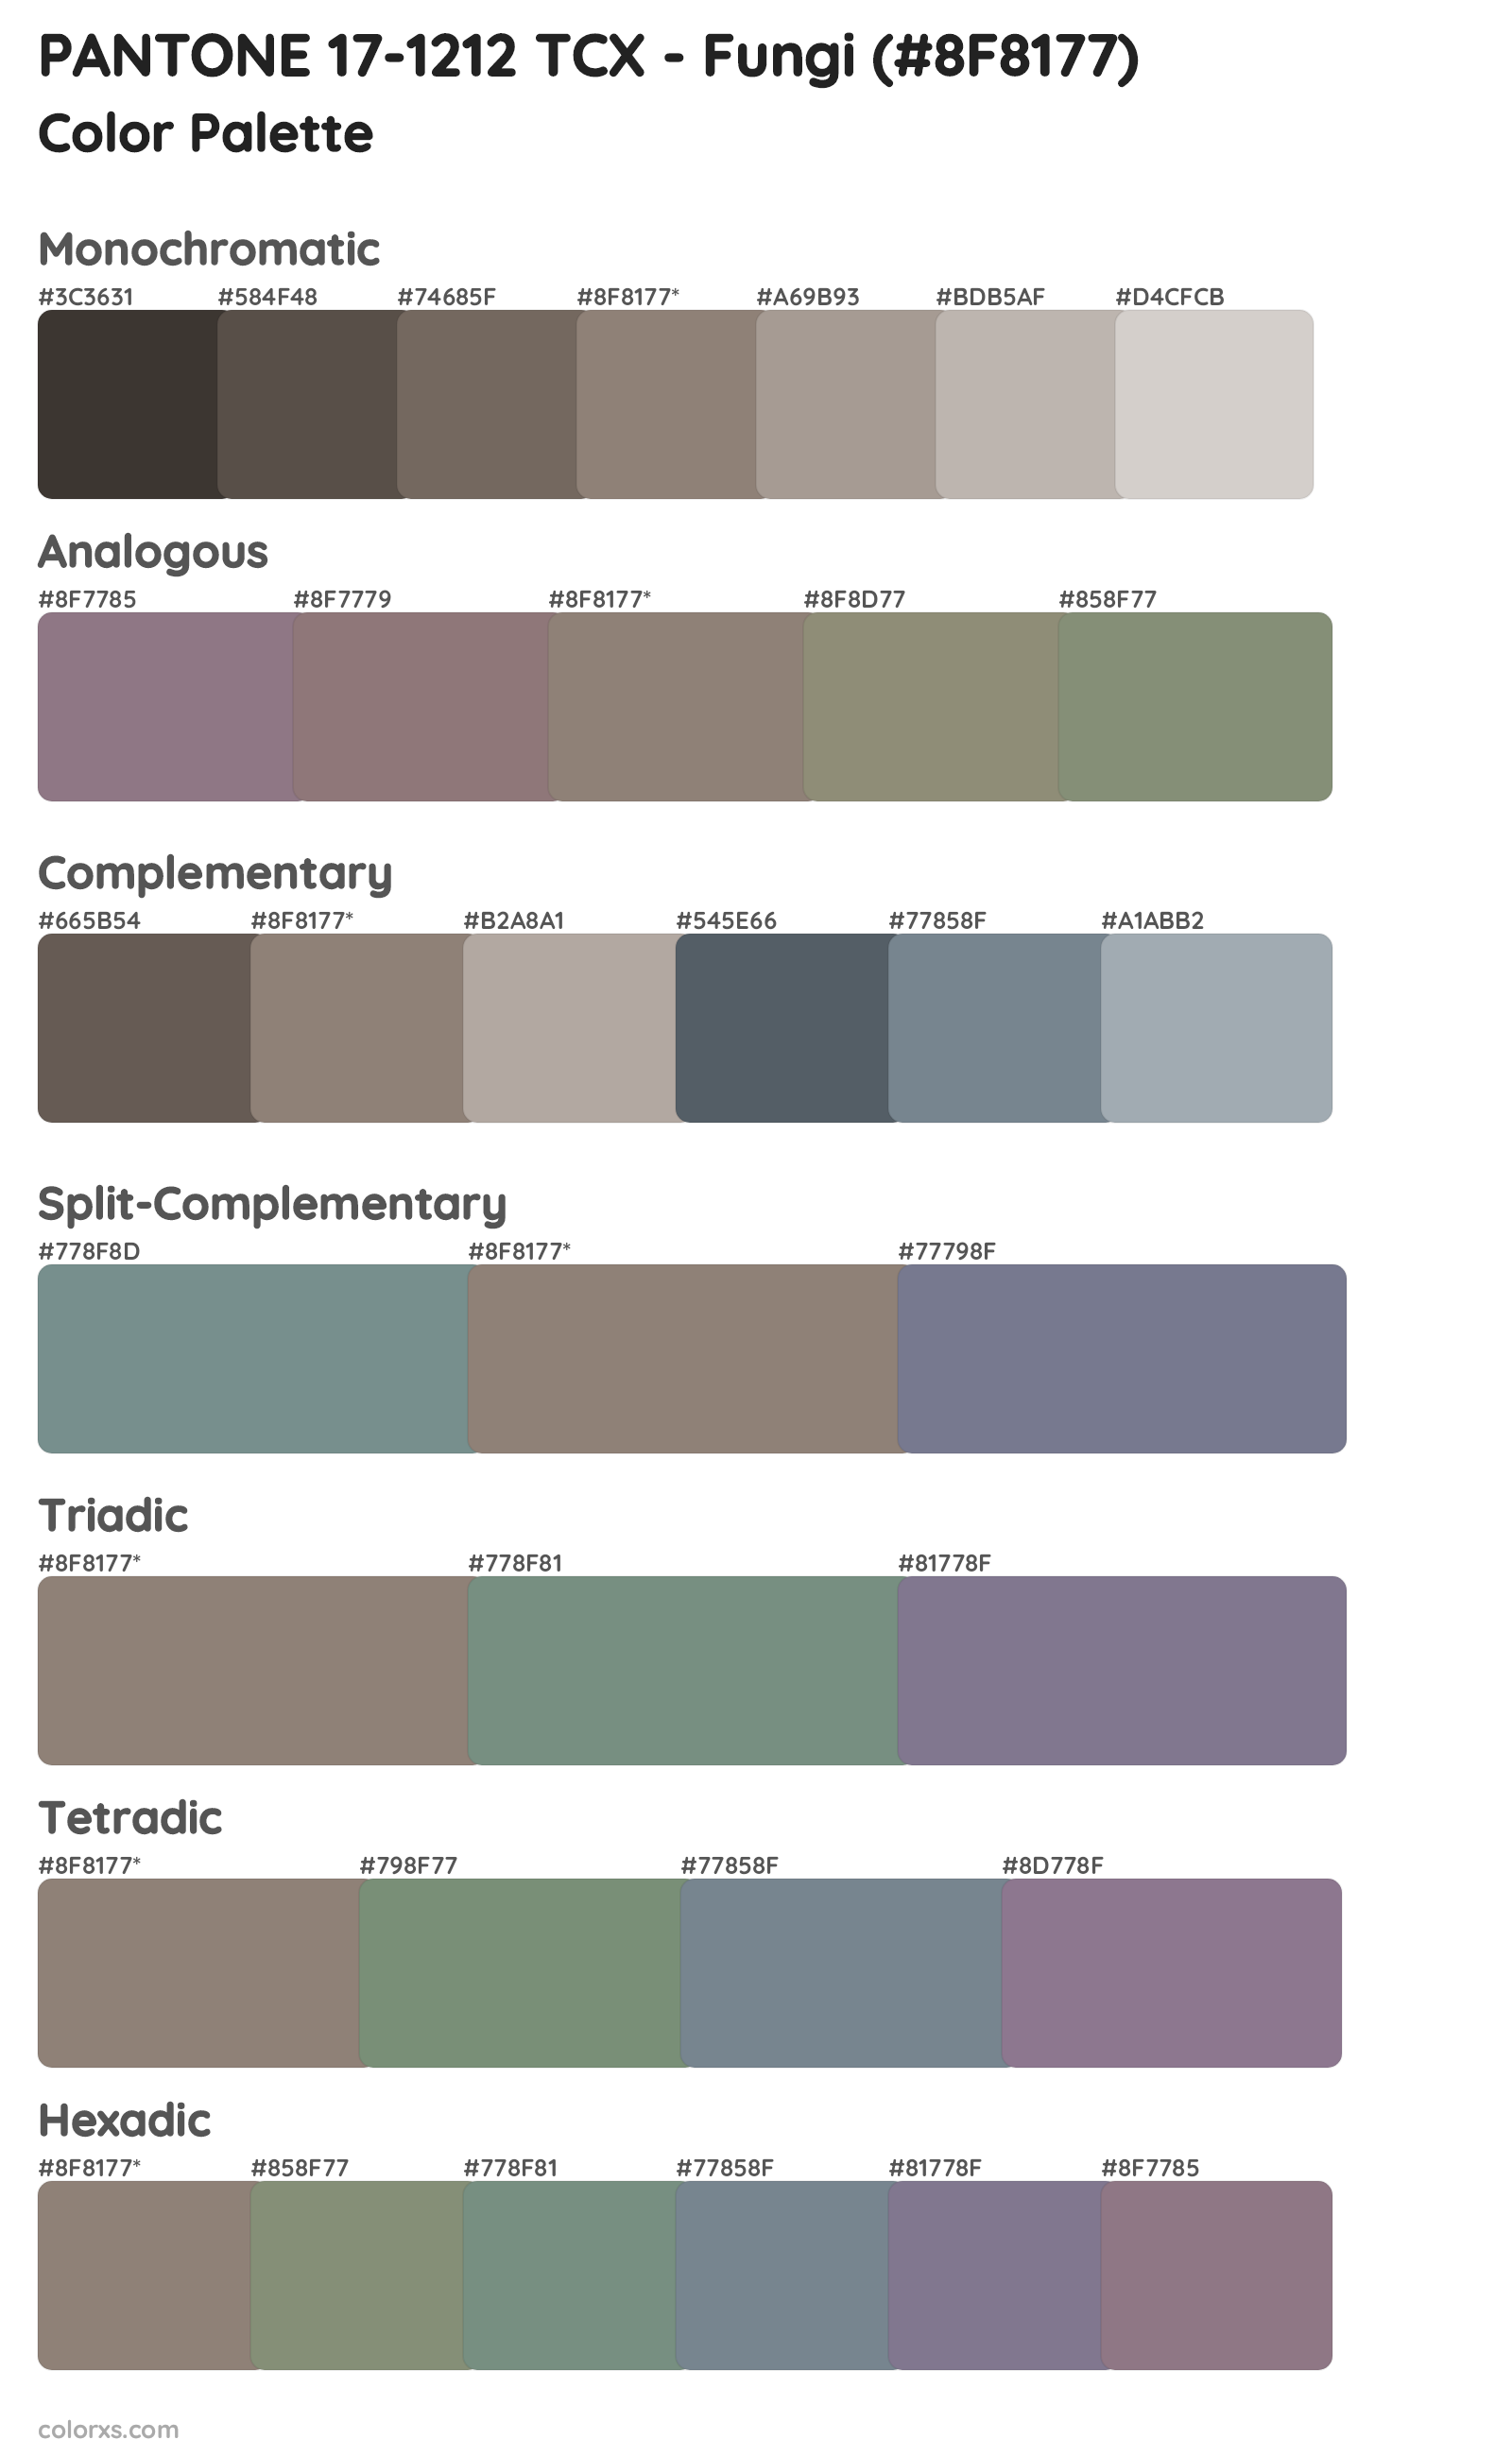 PANTONE 17-1212 TCX - Fungi Color Scheme Palettes